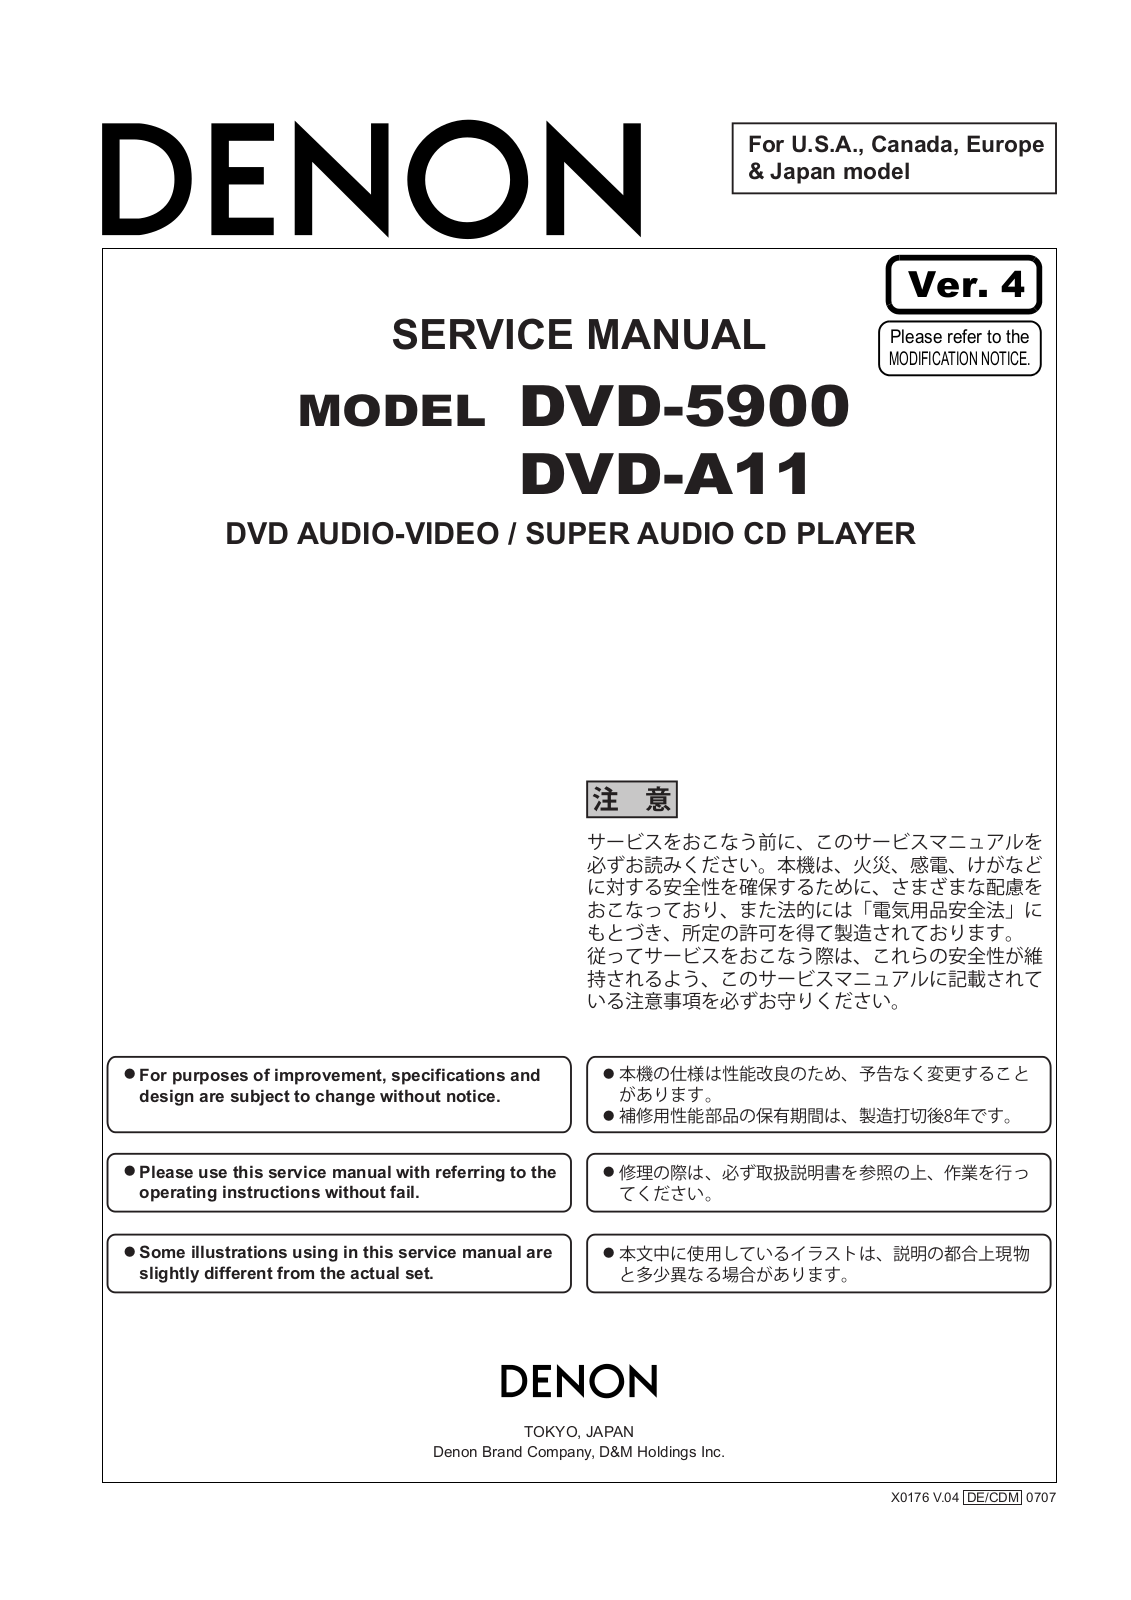 Denon DVD-5900, DVD-A11 Service Manual